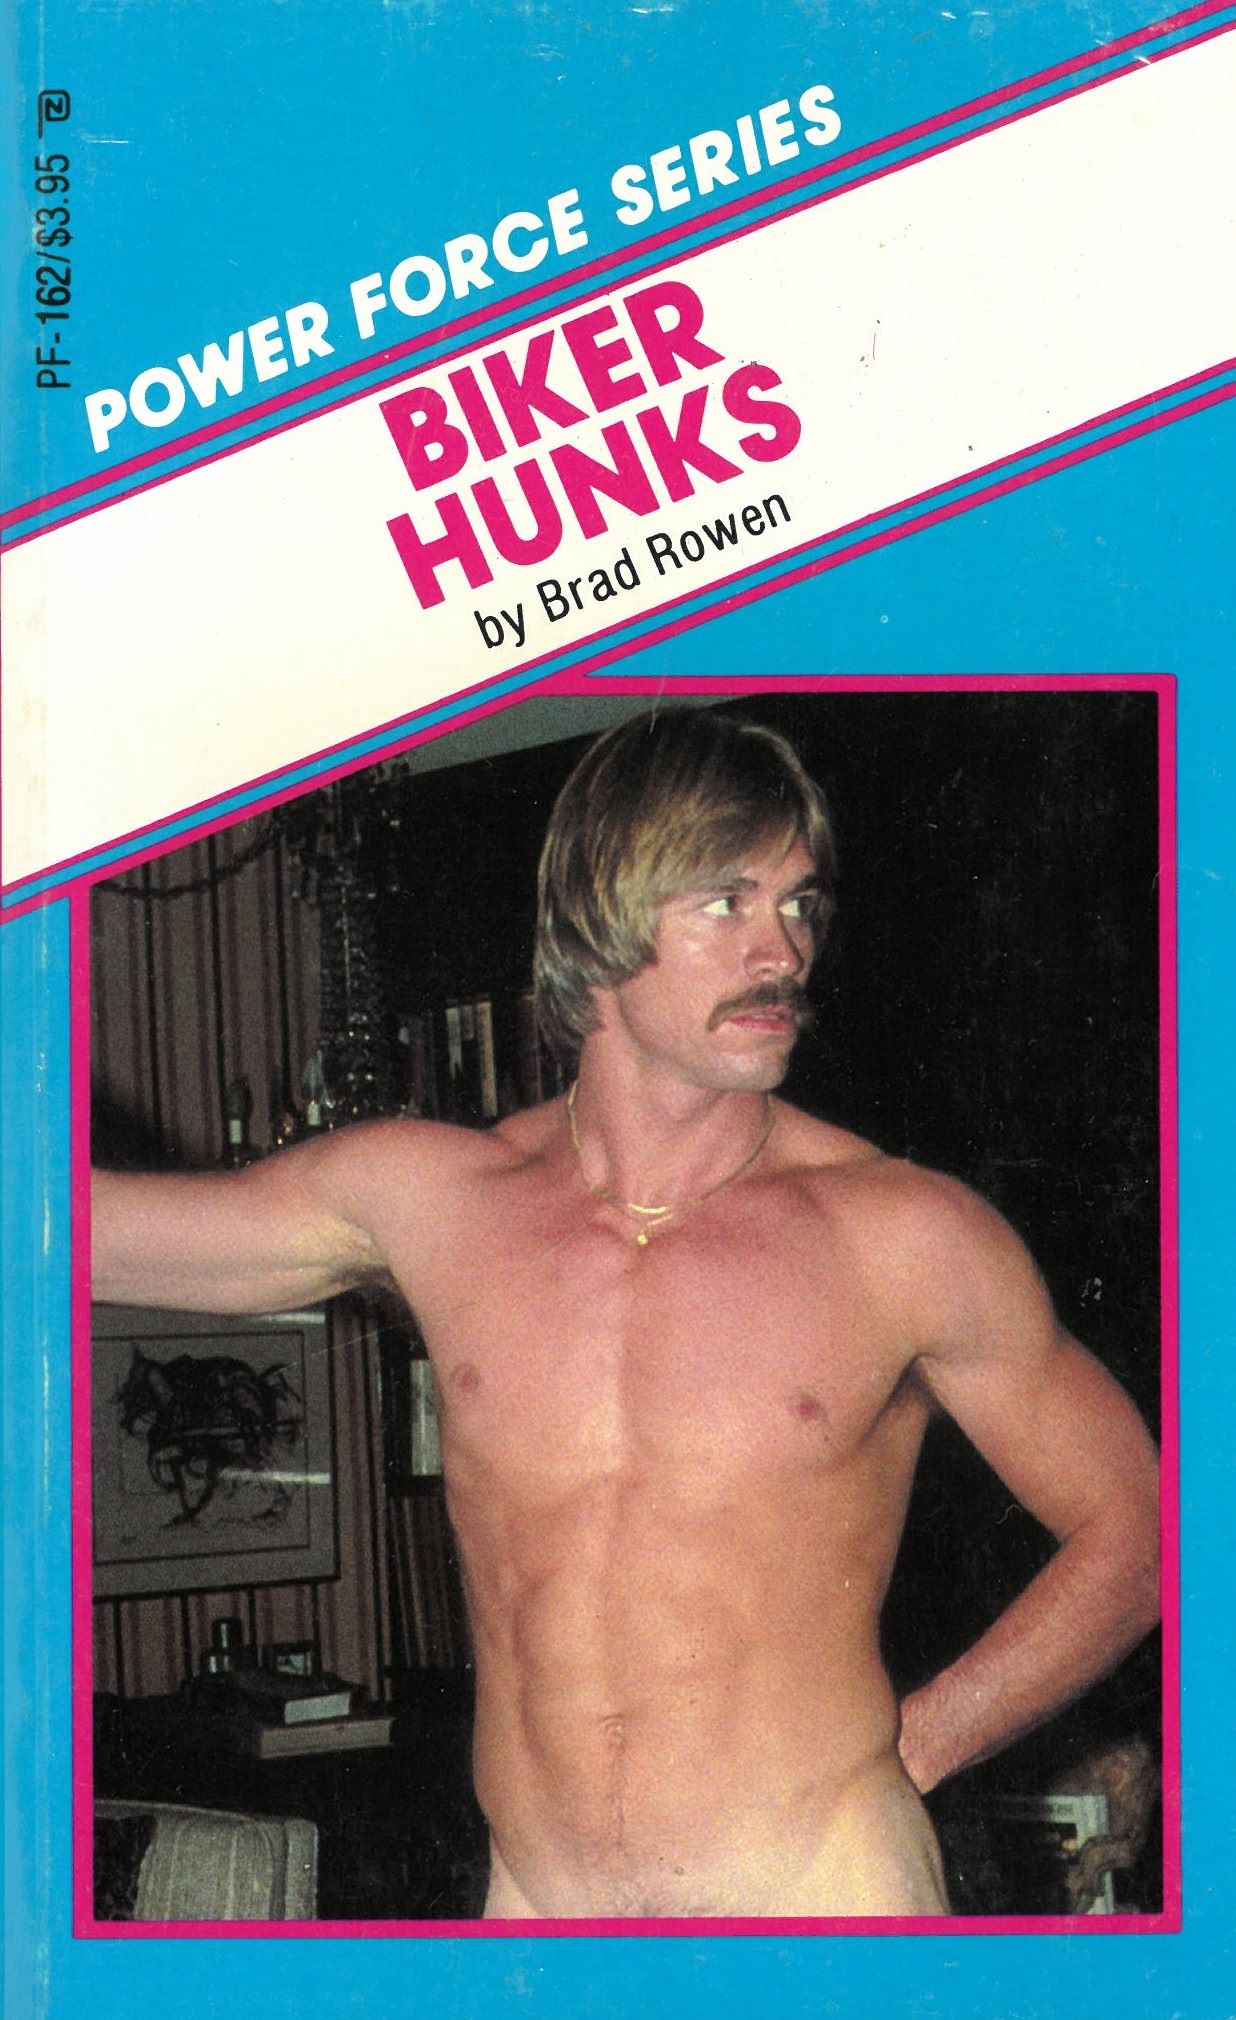 Biker Hunks, gay sex porn book, jerk off book, Bijouworld.com